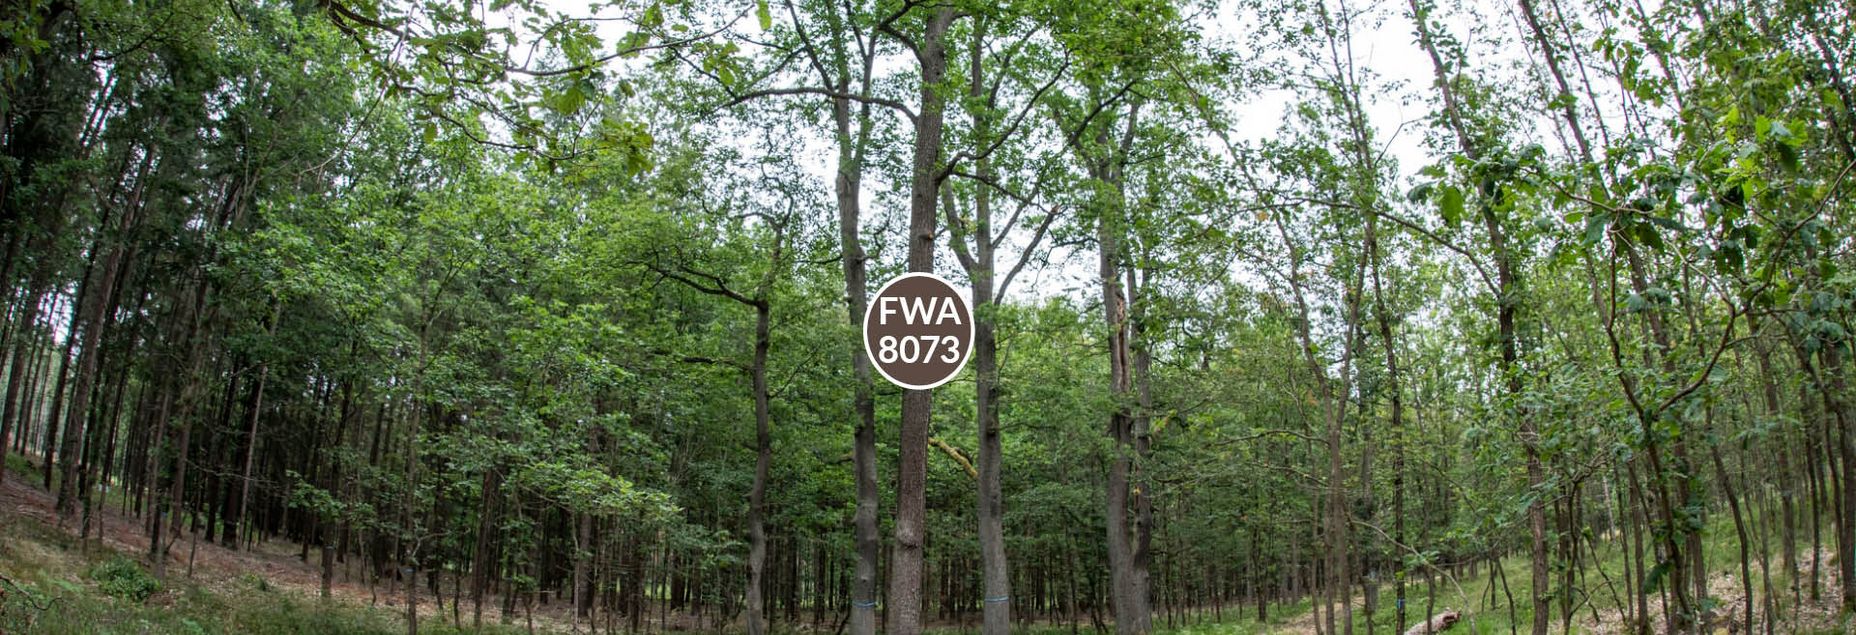 FriedWald-Onlineshop FWA 8073